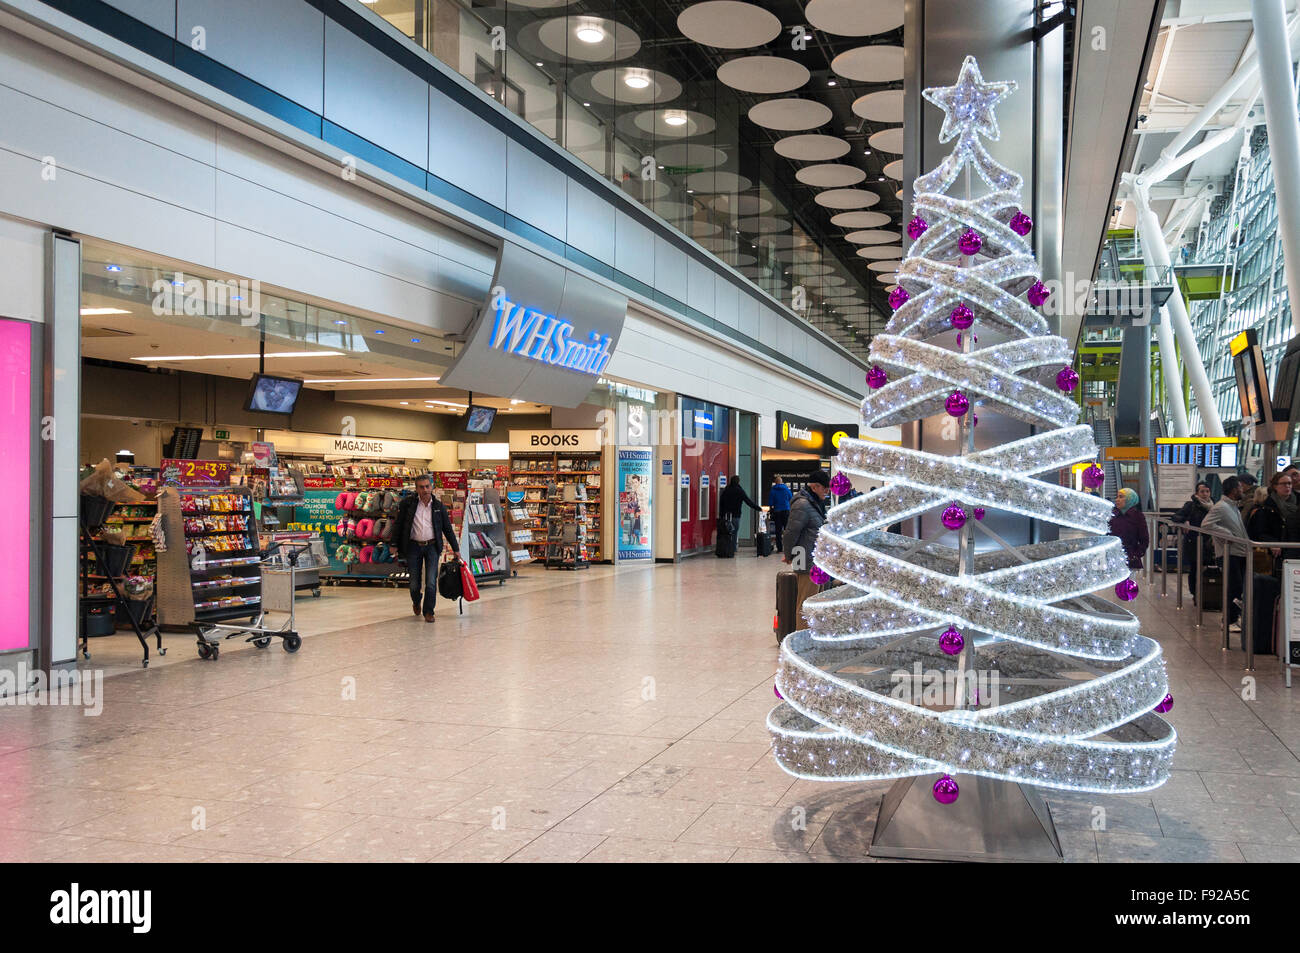 Arbre de Noël au niveau des arrivées, terminal 5, Heathrow Airport. London, Greater London, Angleterre, Royaume-Uni Banque D'Images